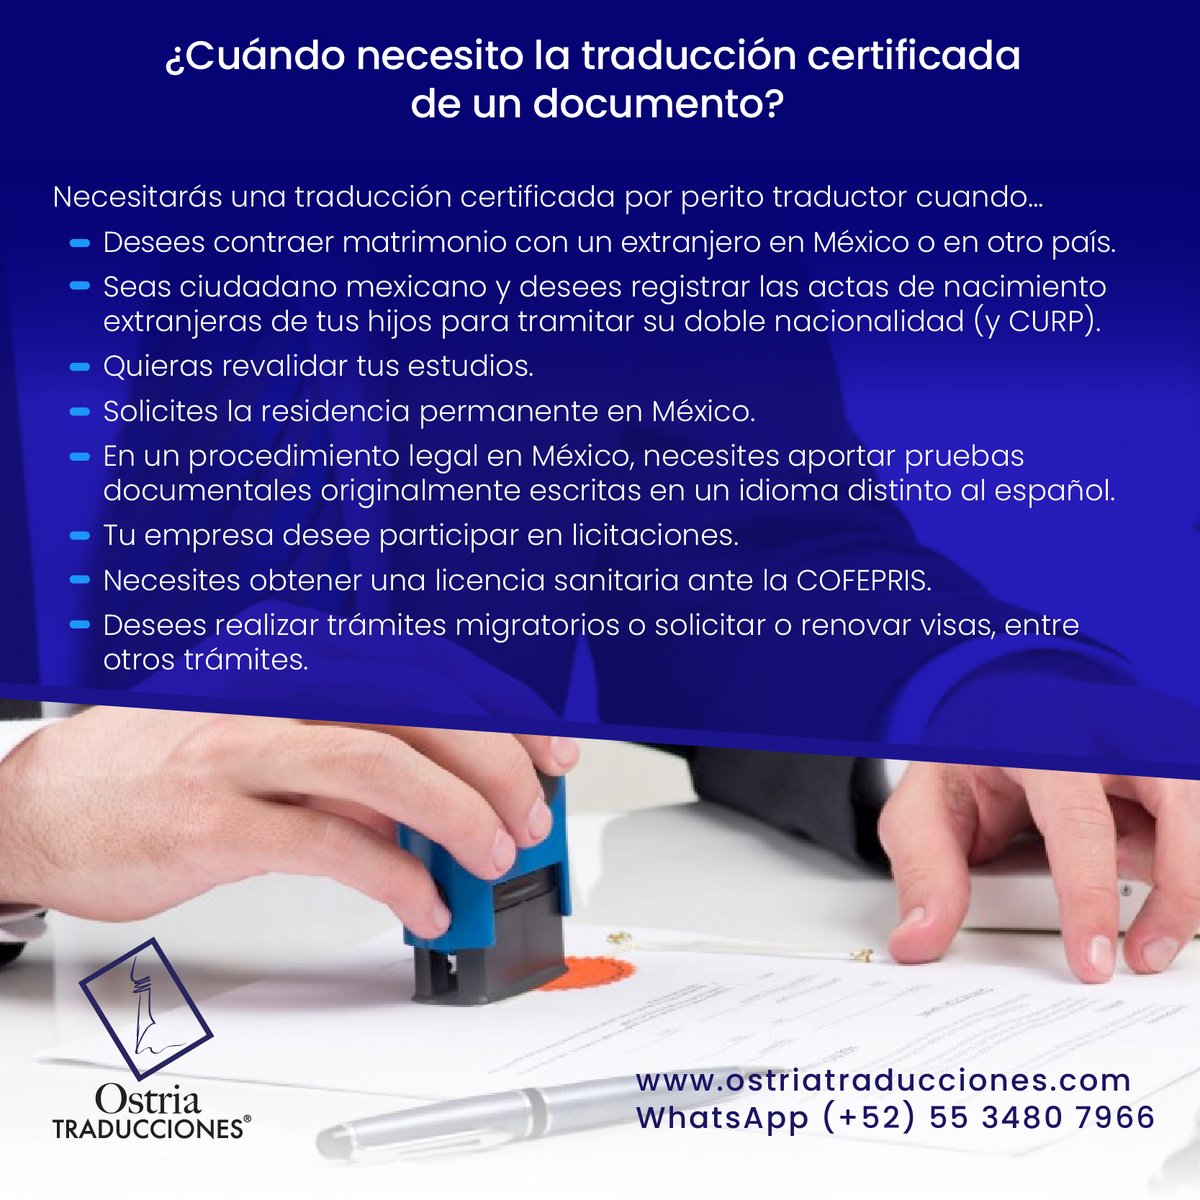 Certified translations. Quotations: ostria.traducciones@gmail.com ostriatraducciones.com #peritotraductor #tsjcdmx #cjf #certifiedtranslations #SwornTranslators